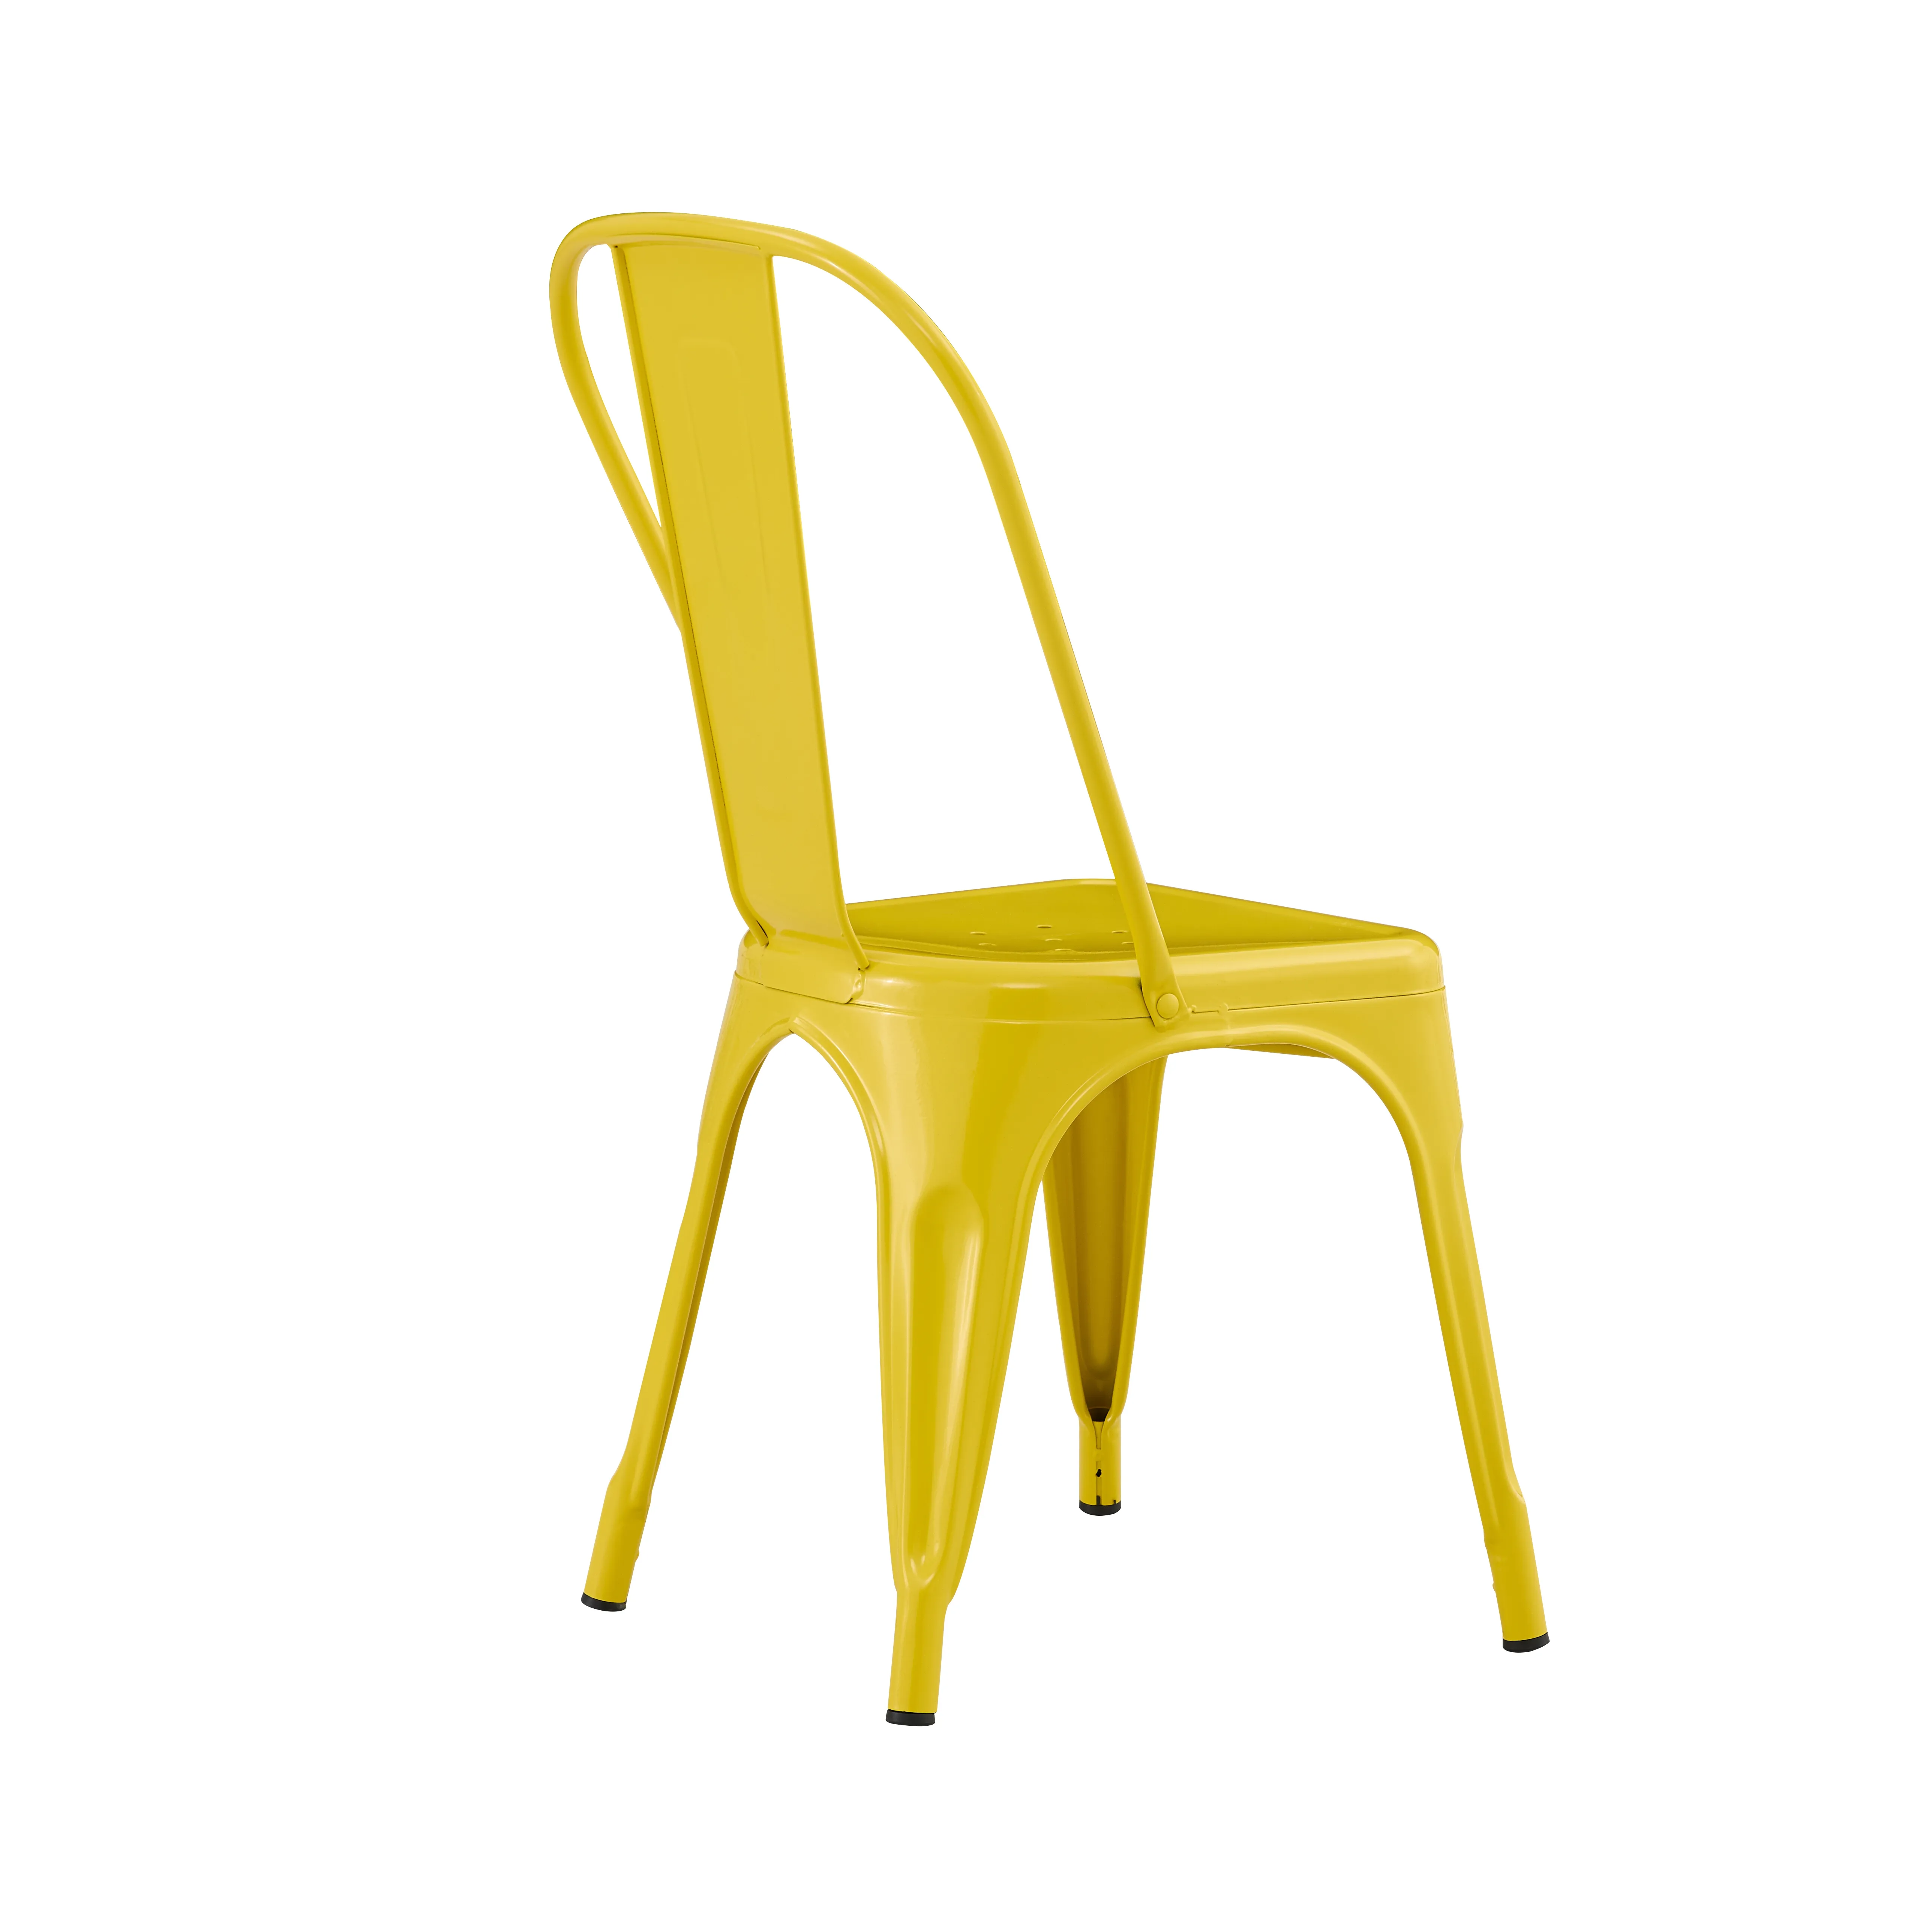 Retro sandalye demir endüstriyel tasarım istiflenebilir sandalye siyah Metal Cyber kafe sandalyesi Bar çin üretici için